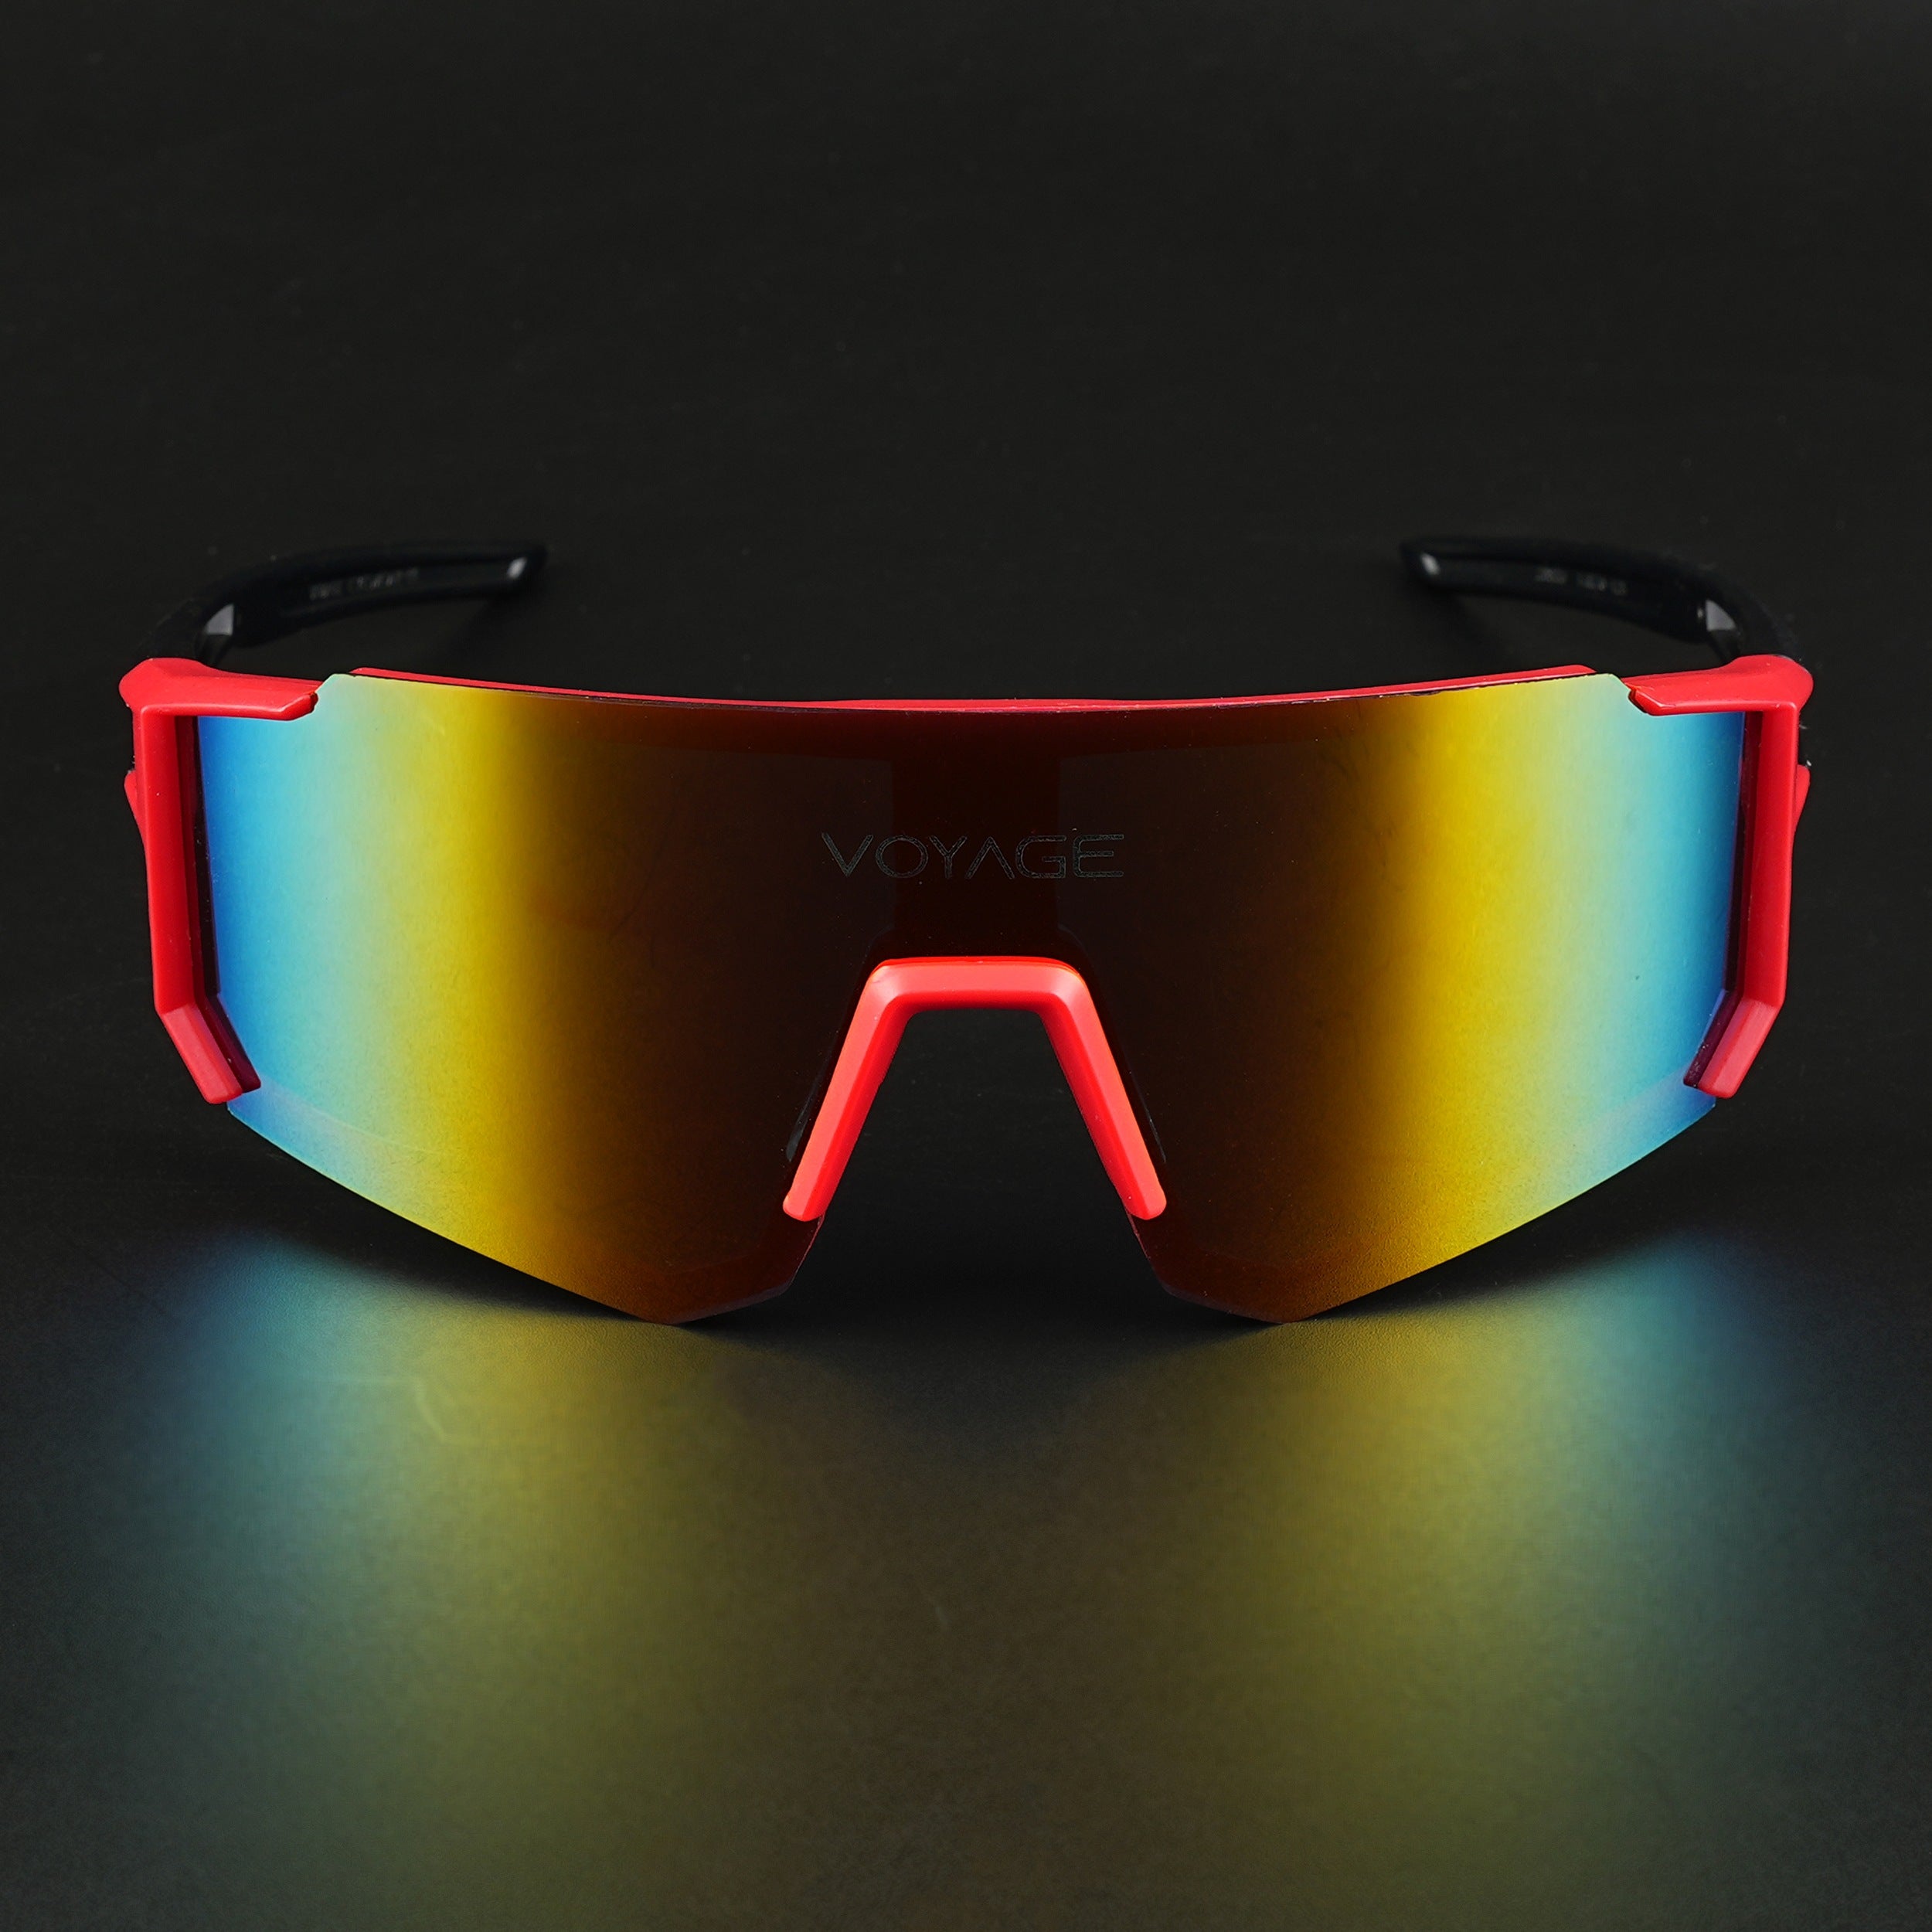 Voyage Drift Sunglasses for Men & Women (Multicolor Lens | Red Frame - MG5624)